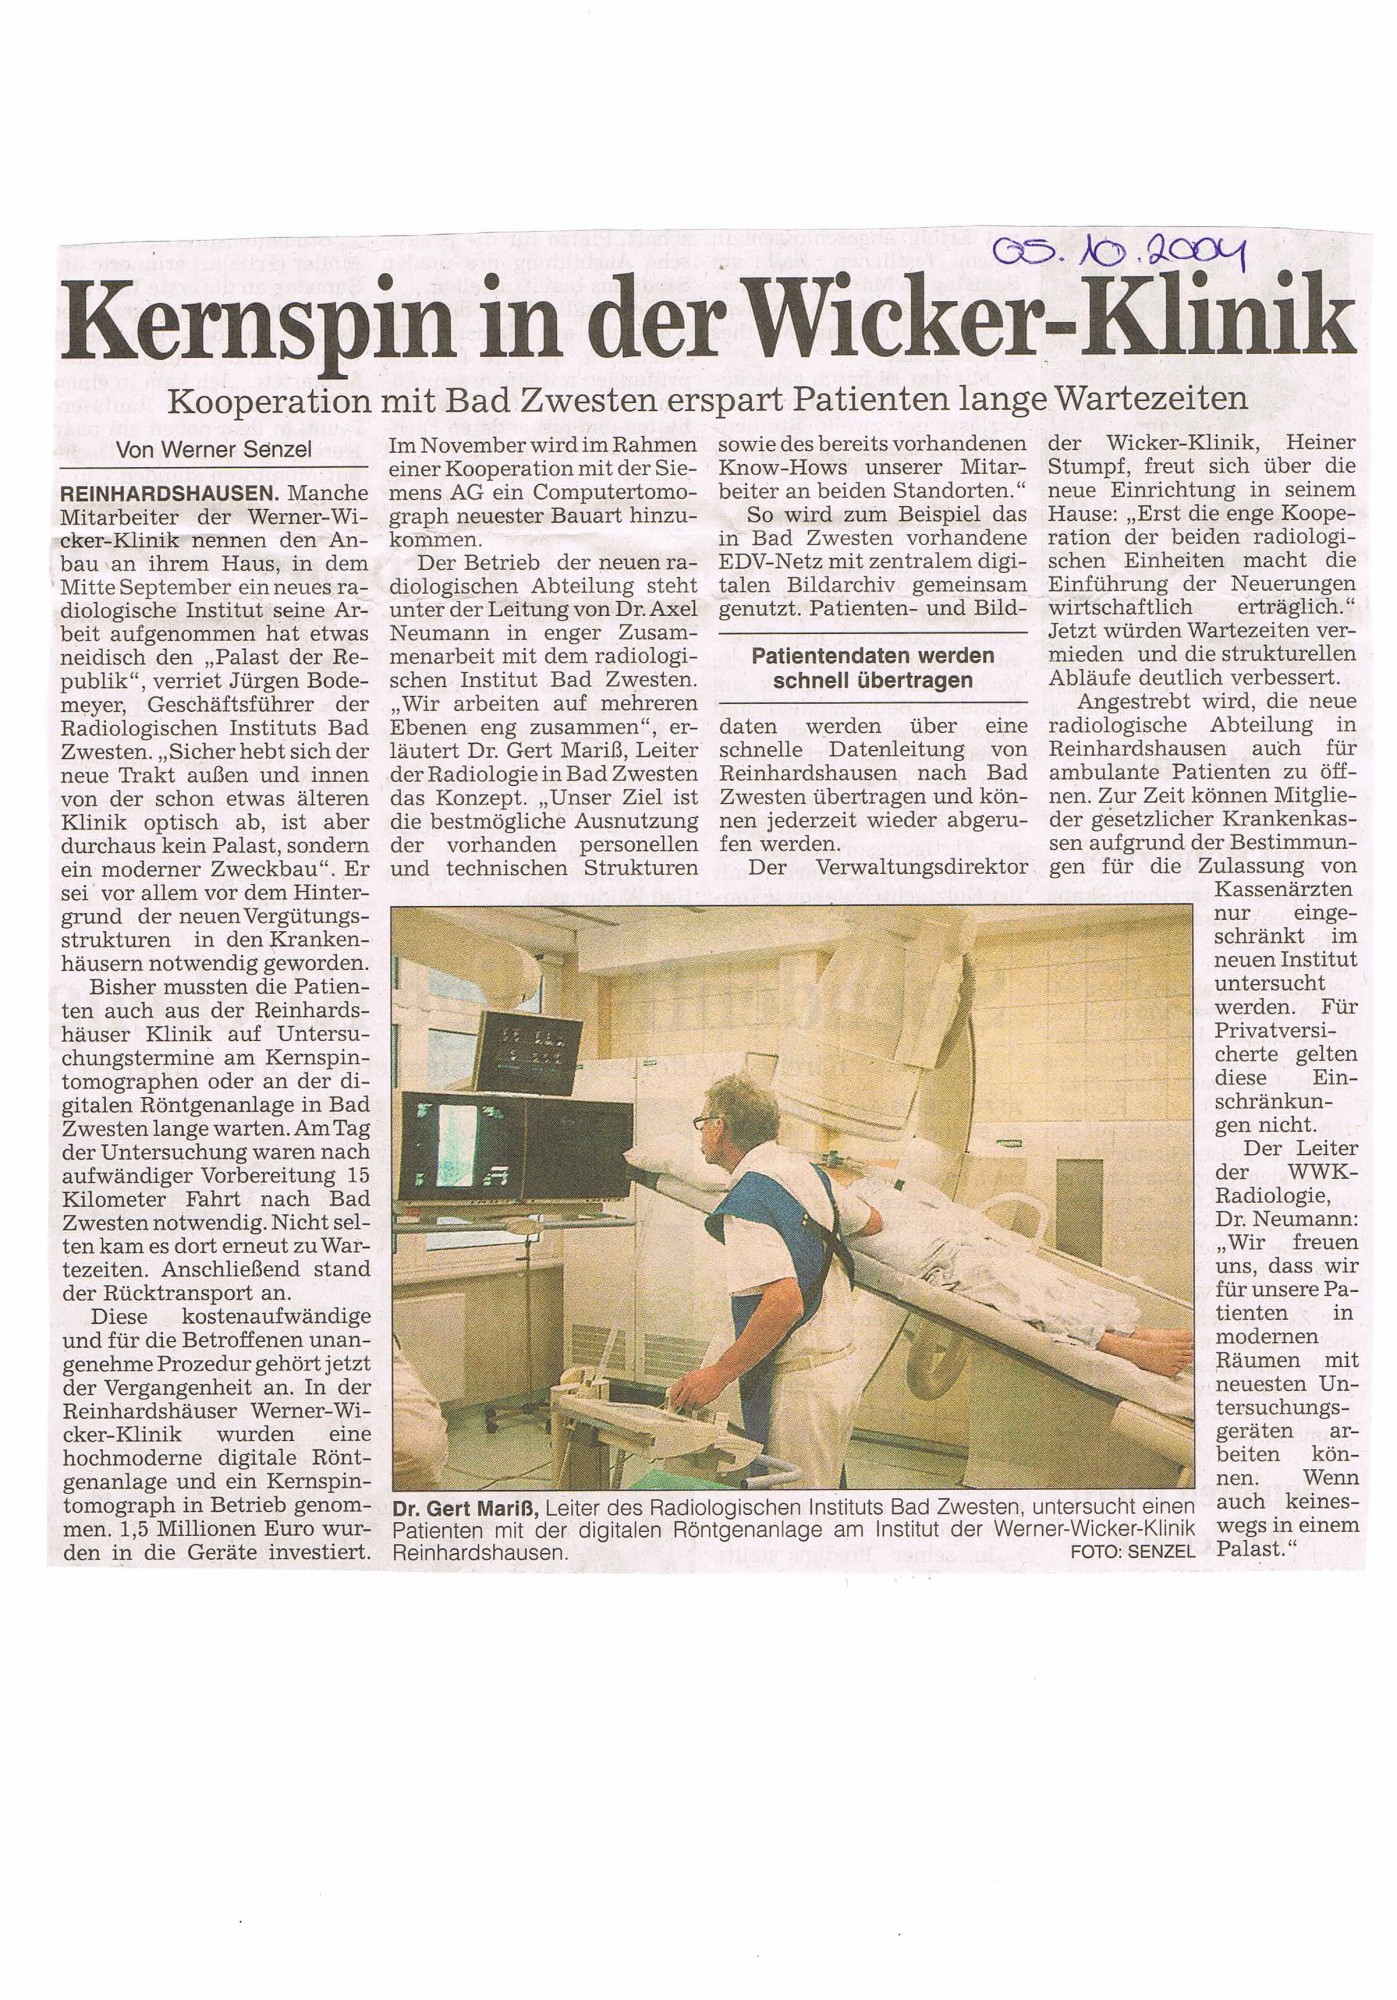 2004-10-05 Kernspin in der Wicker-Klinik-001